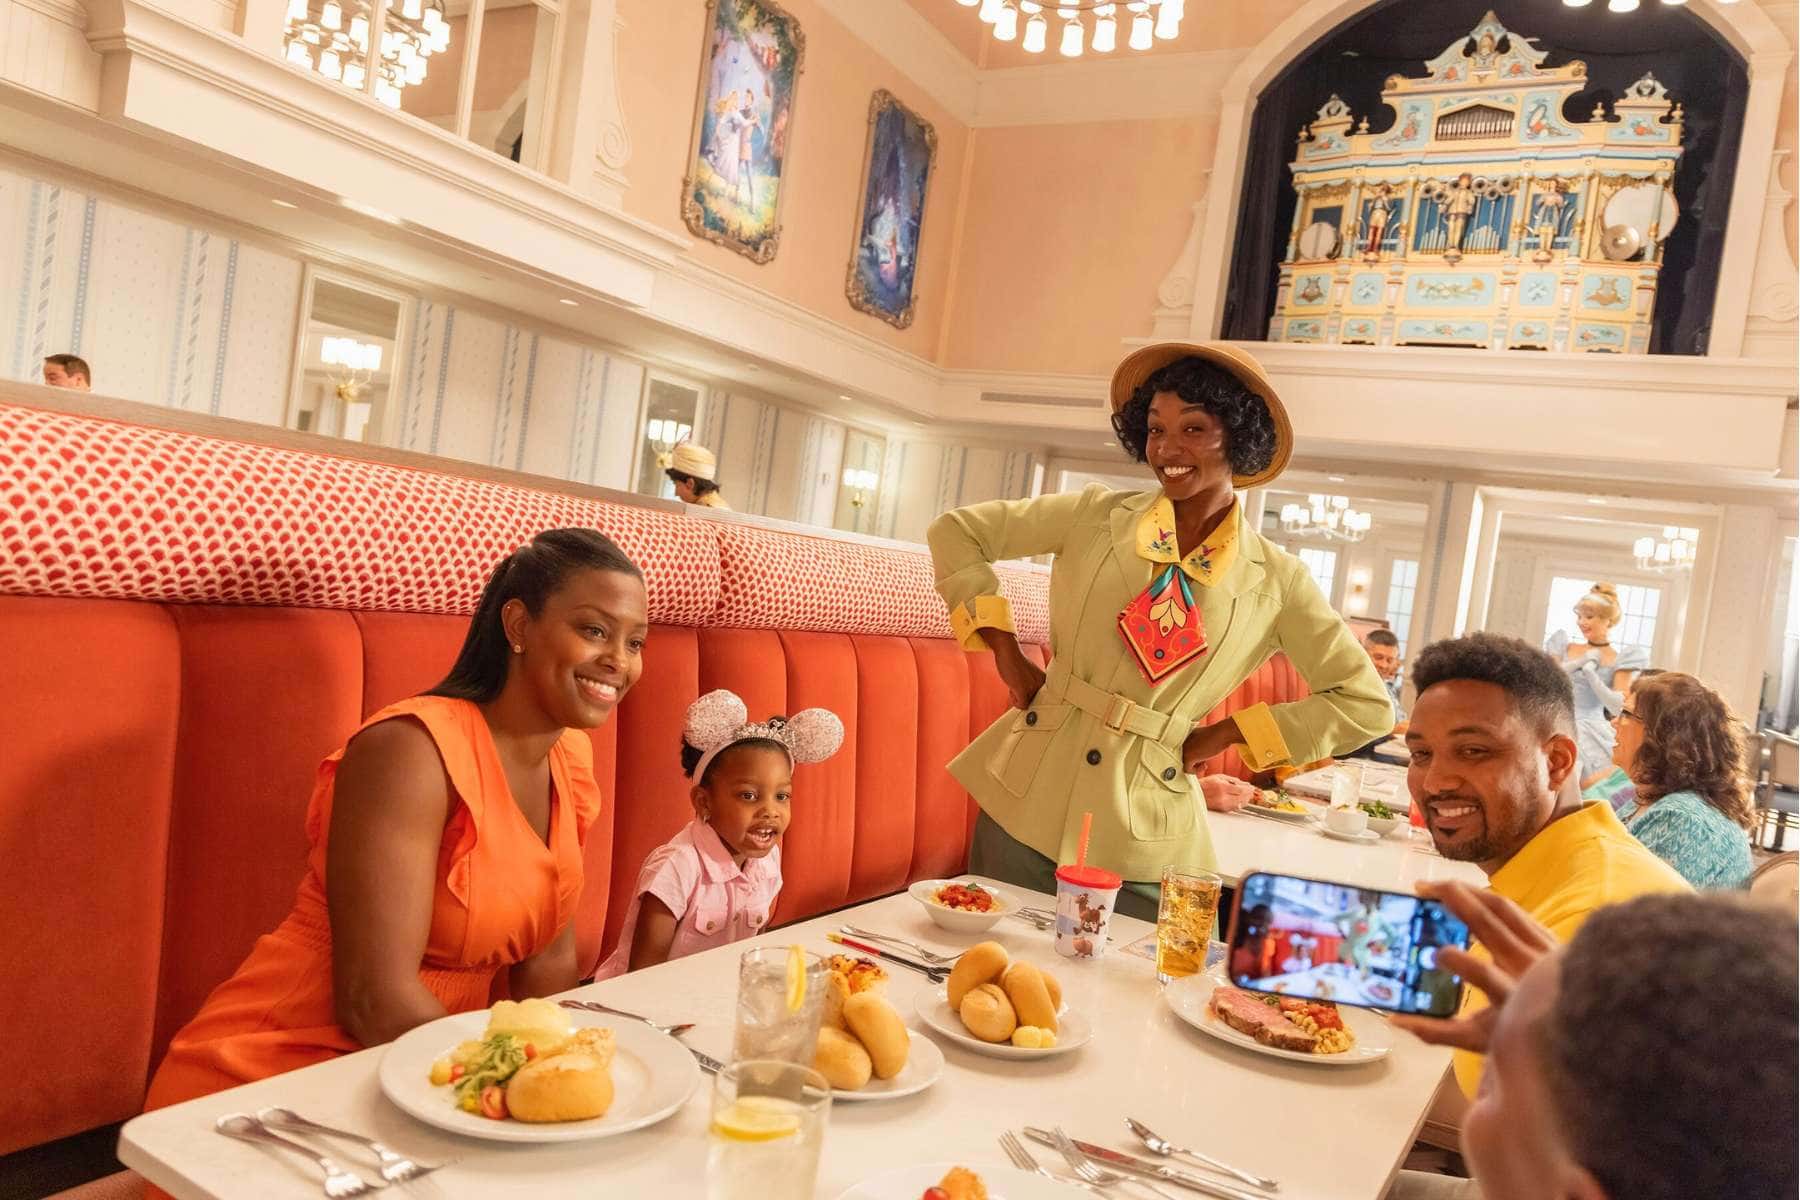 Une aventure culinaire magique : où dîner à Walt Disney World